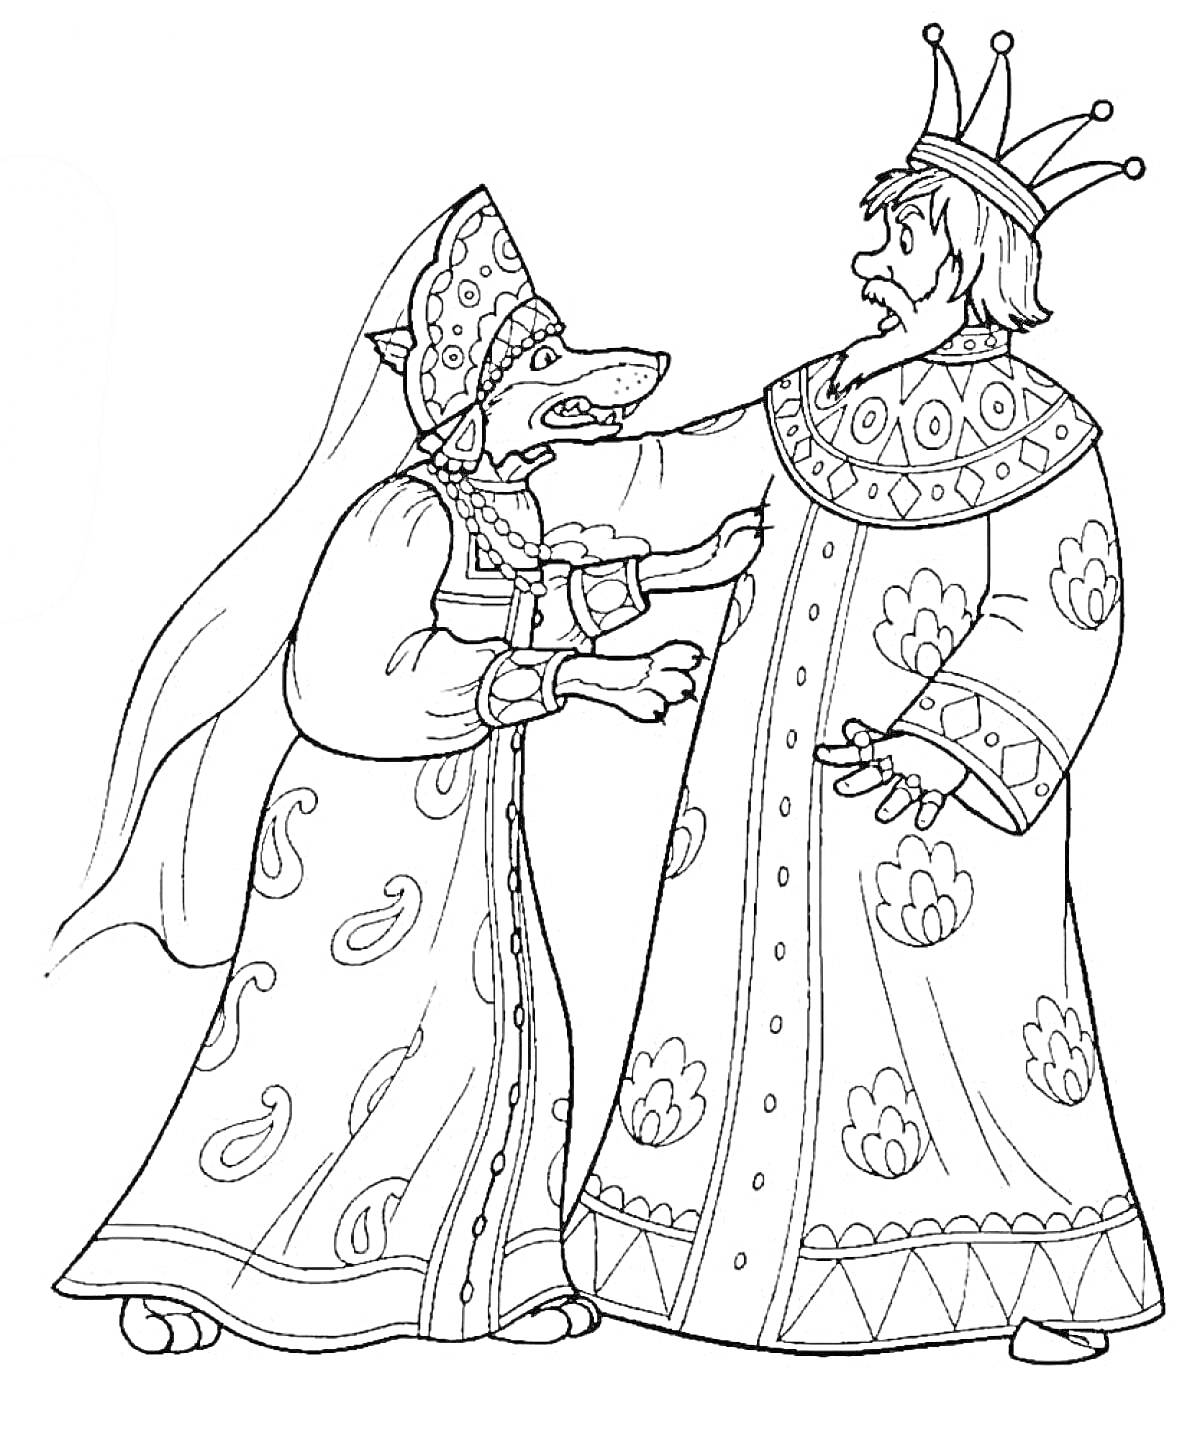 Мужчина и женщина в русских народных костюмах. Мужчина носит длинный халат и корону, женщина в кокошнике и платье с узорами.